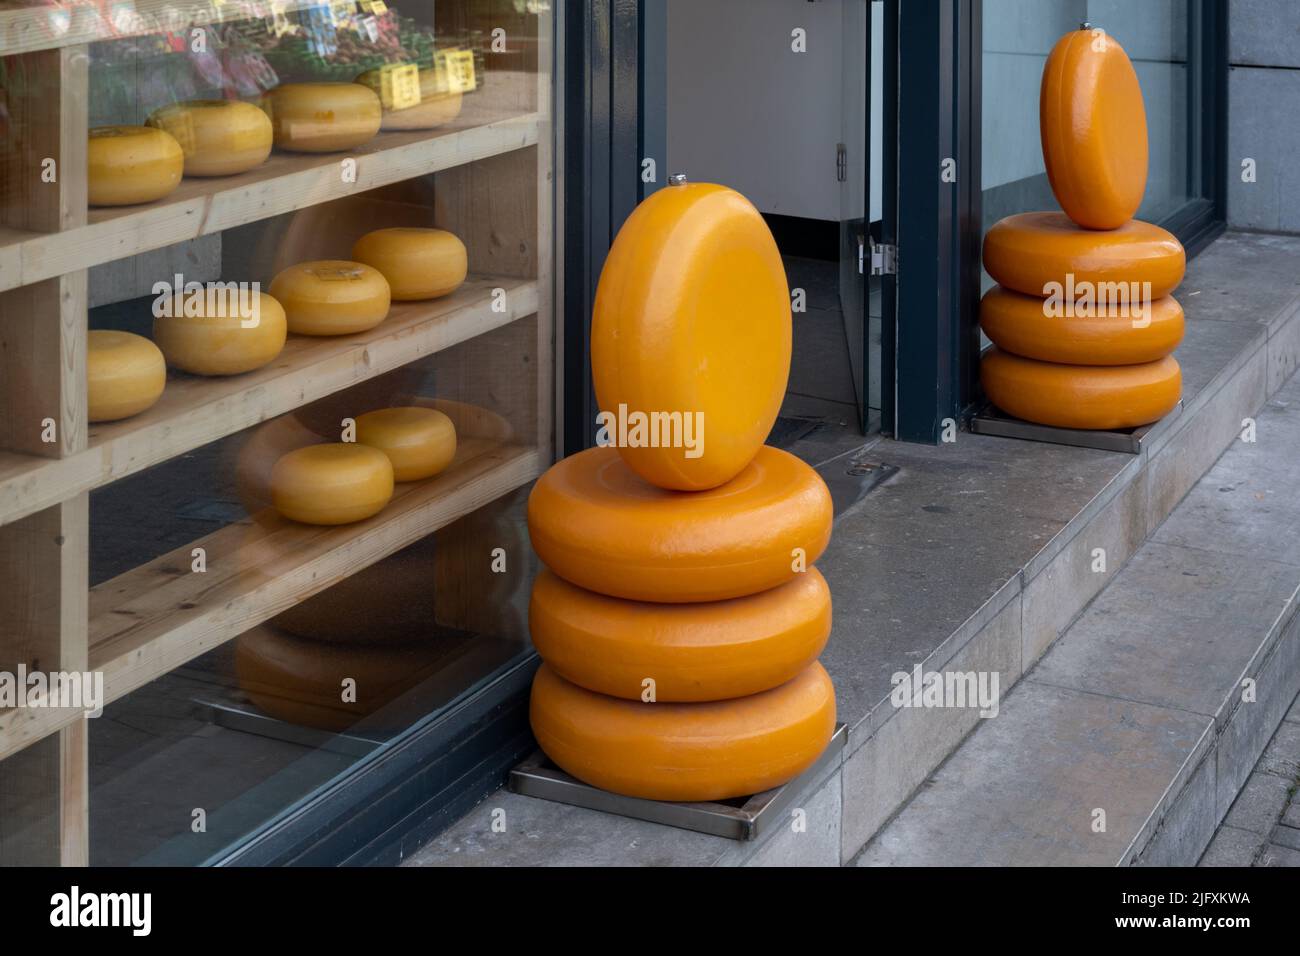 https://c8.alamy.com/comp/2JFXKWA/gouda-cheese-store-in-amsterdam-netherlands-2JFXKWA.jpg